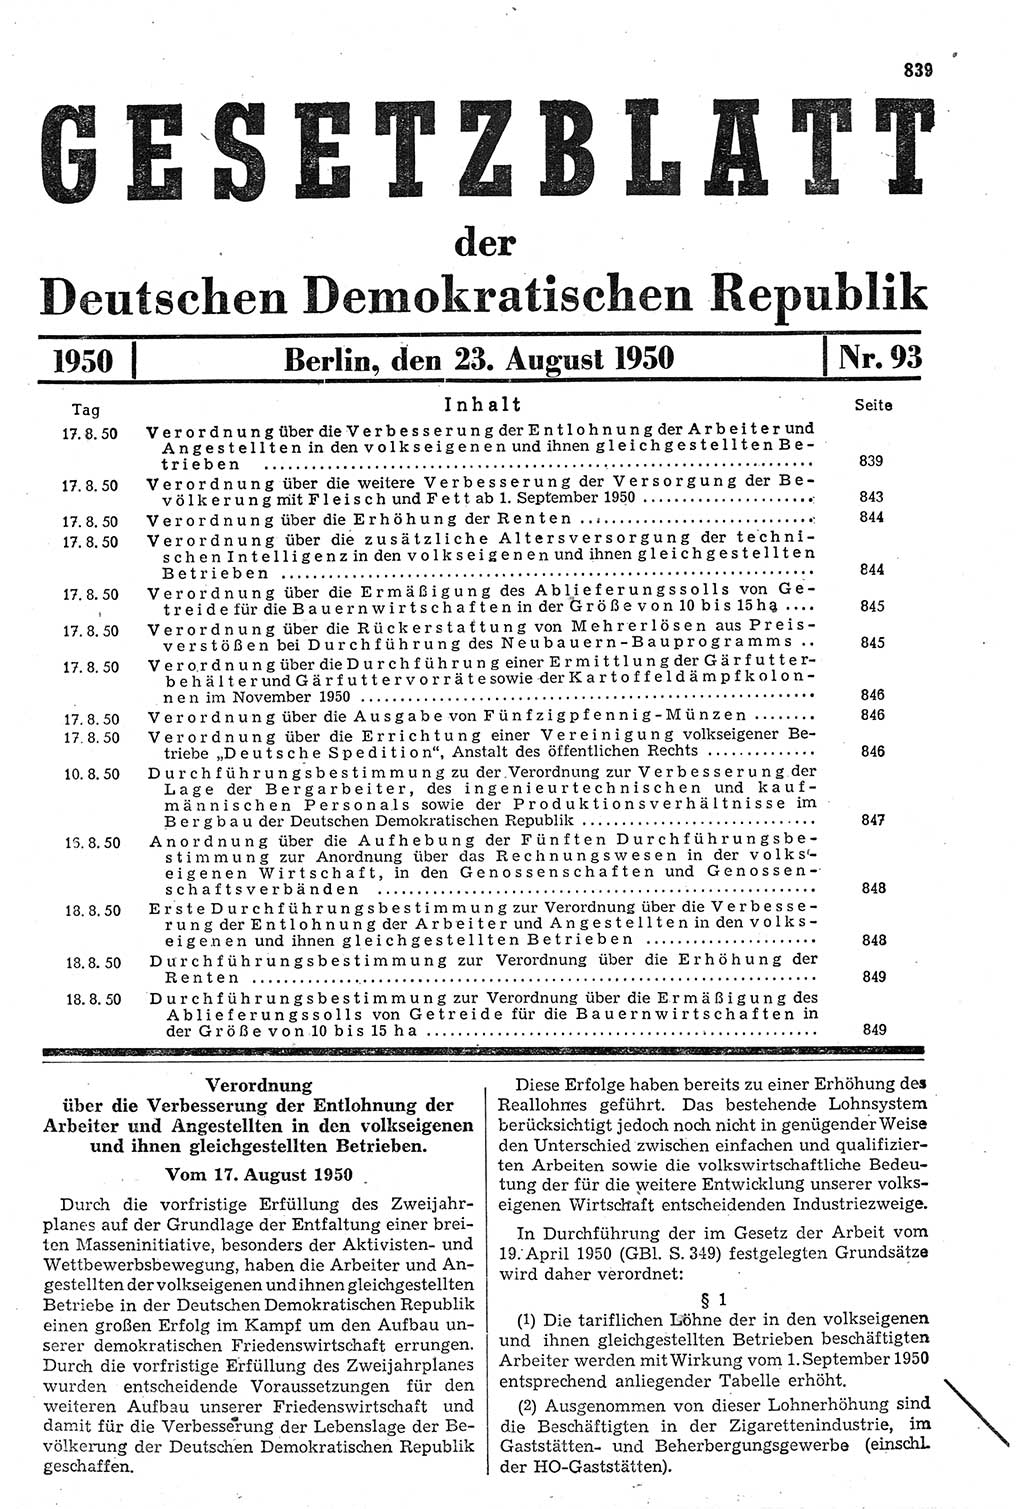 Gesetzblatt (GBl.) der Deutschen Demokratischen Republik (DDR) 1950, Seite 839 (GBl. DDR 1950, S. 839)